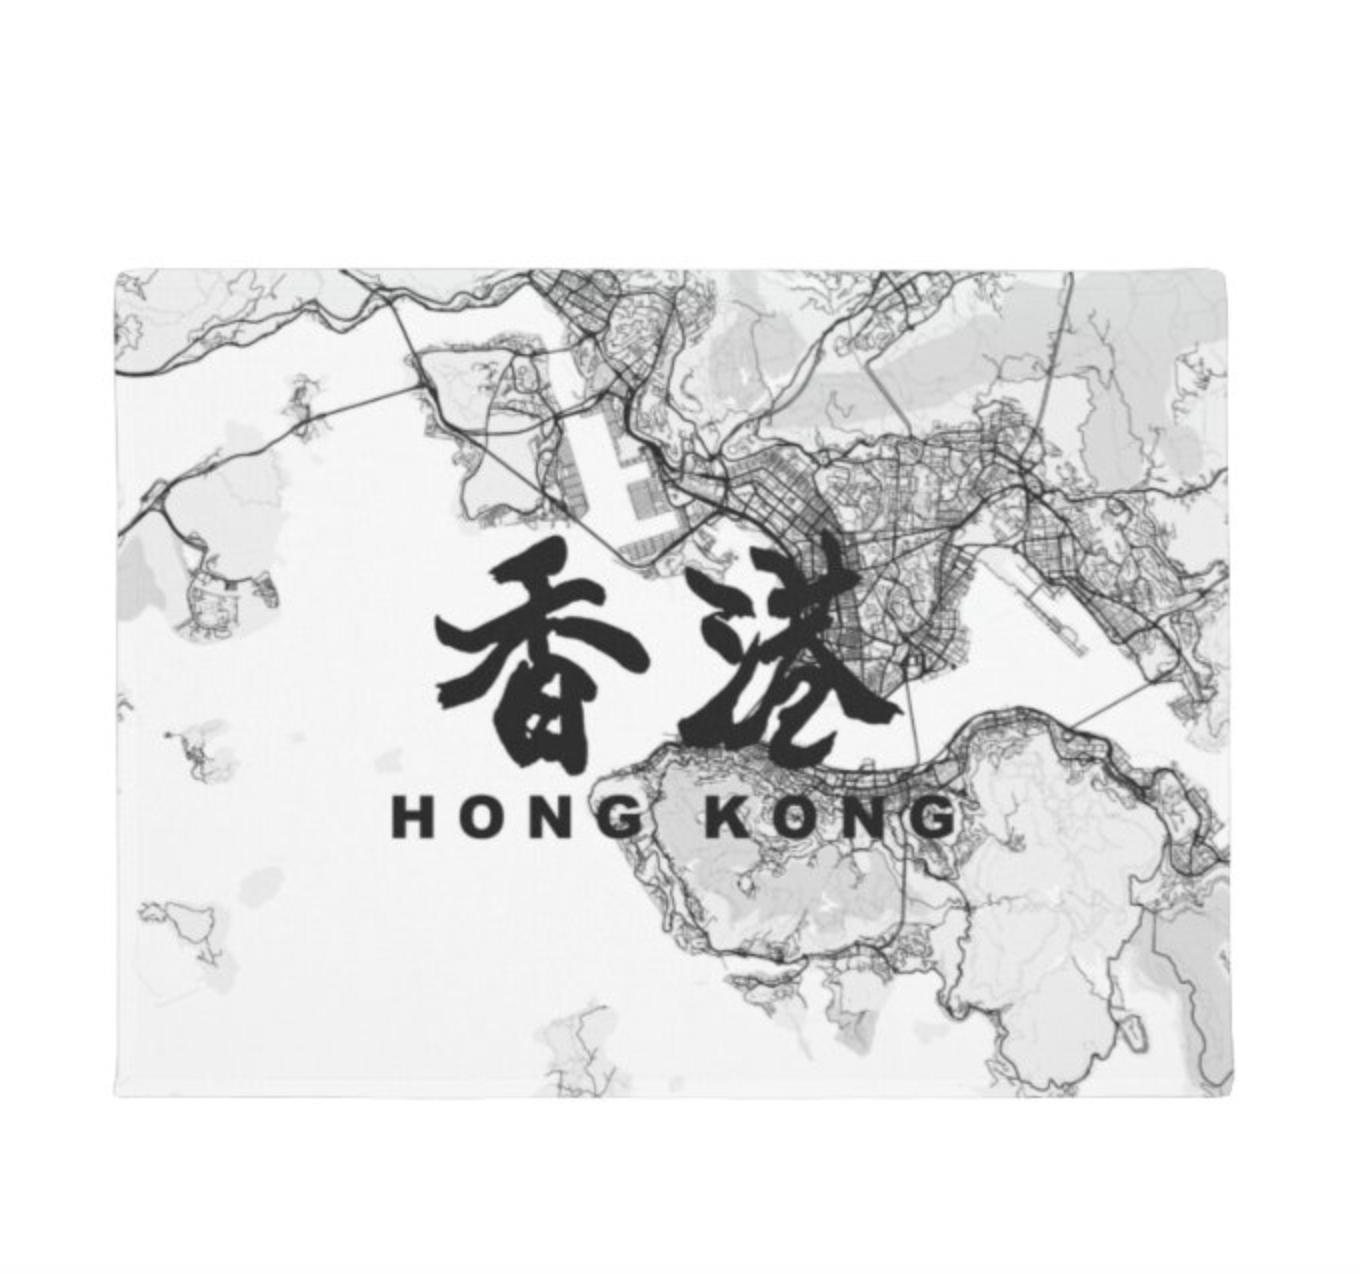 移民禮物-香港地圖掛布-可定製文字-Hong Kong Theme Wall Tapestry Farewell Gift - HKGIFTFORU